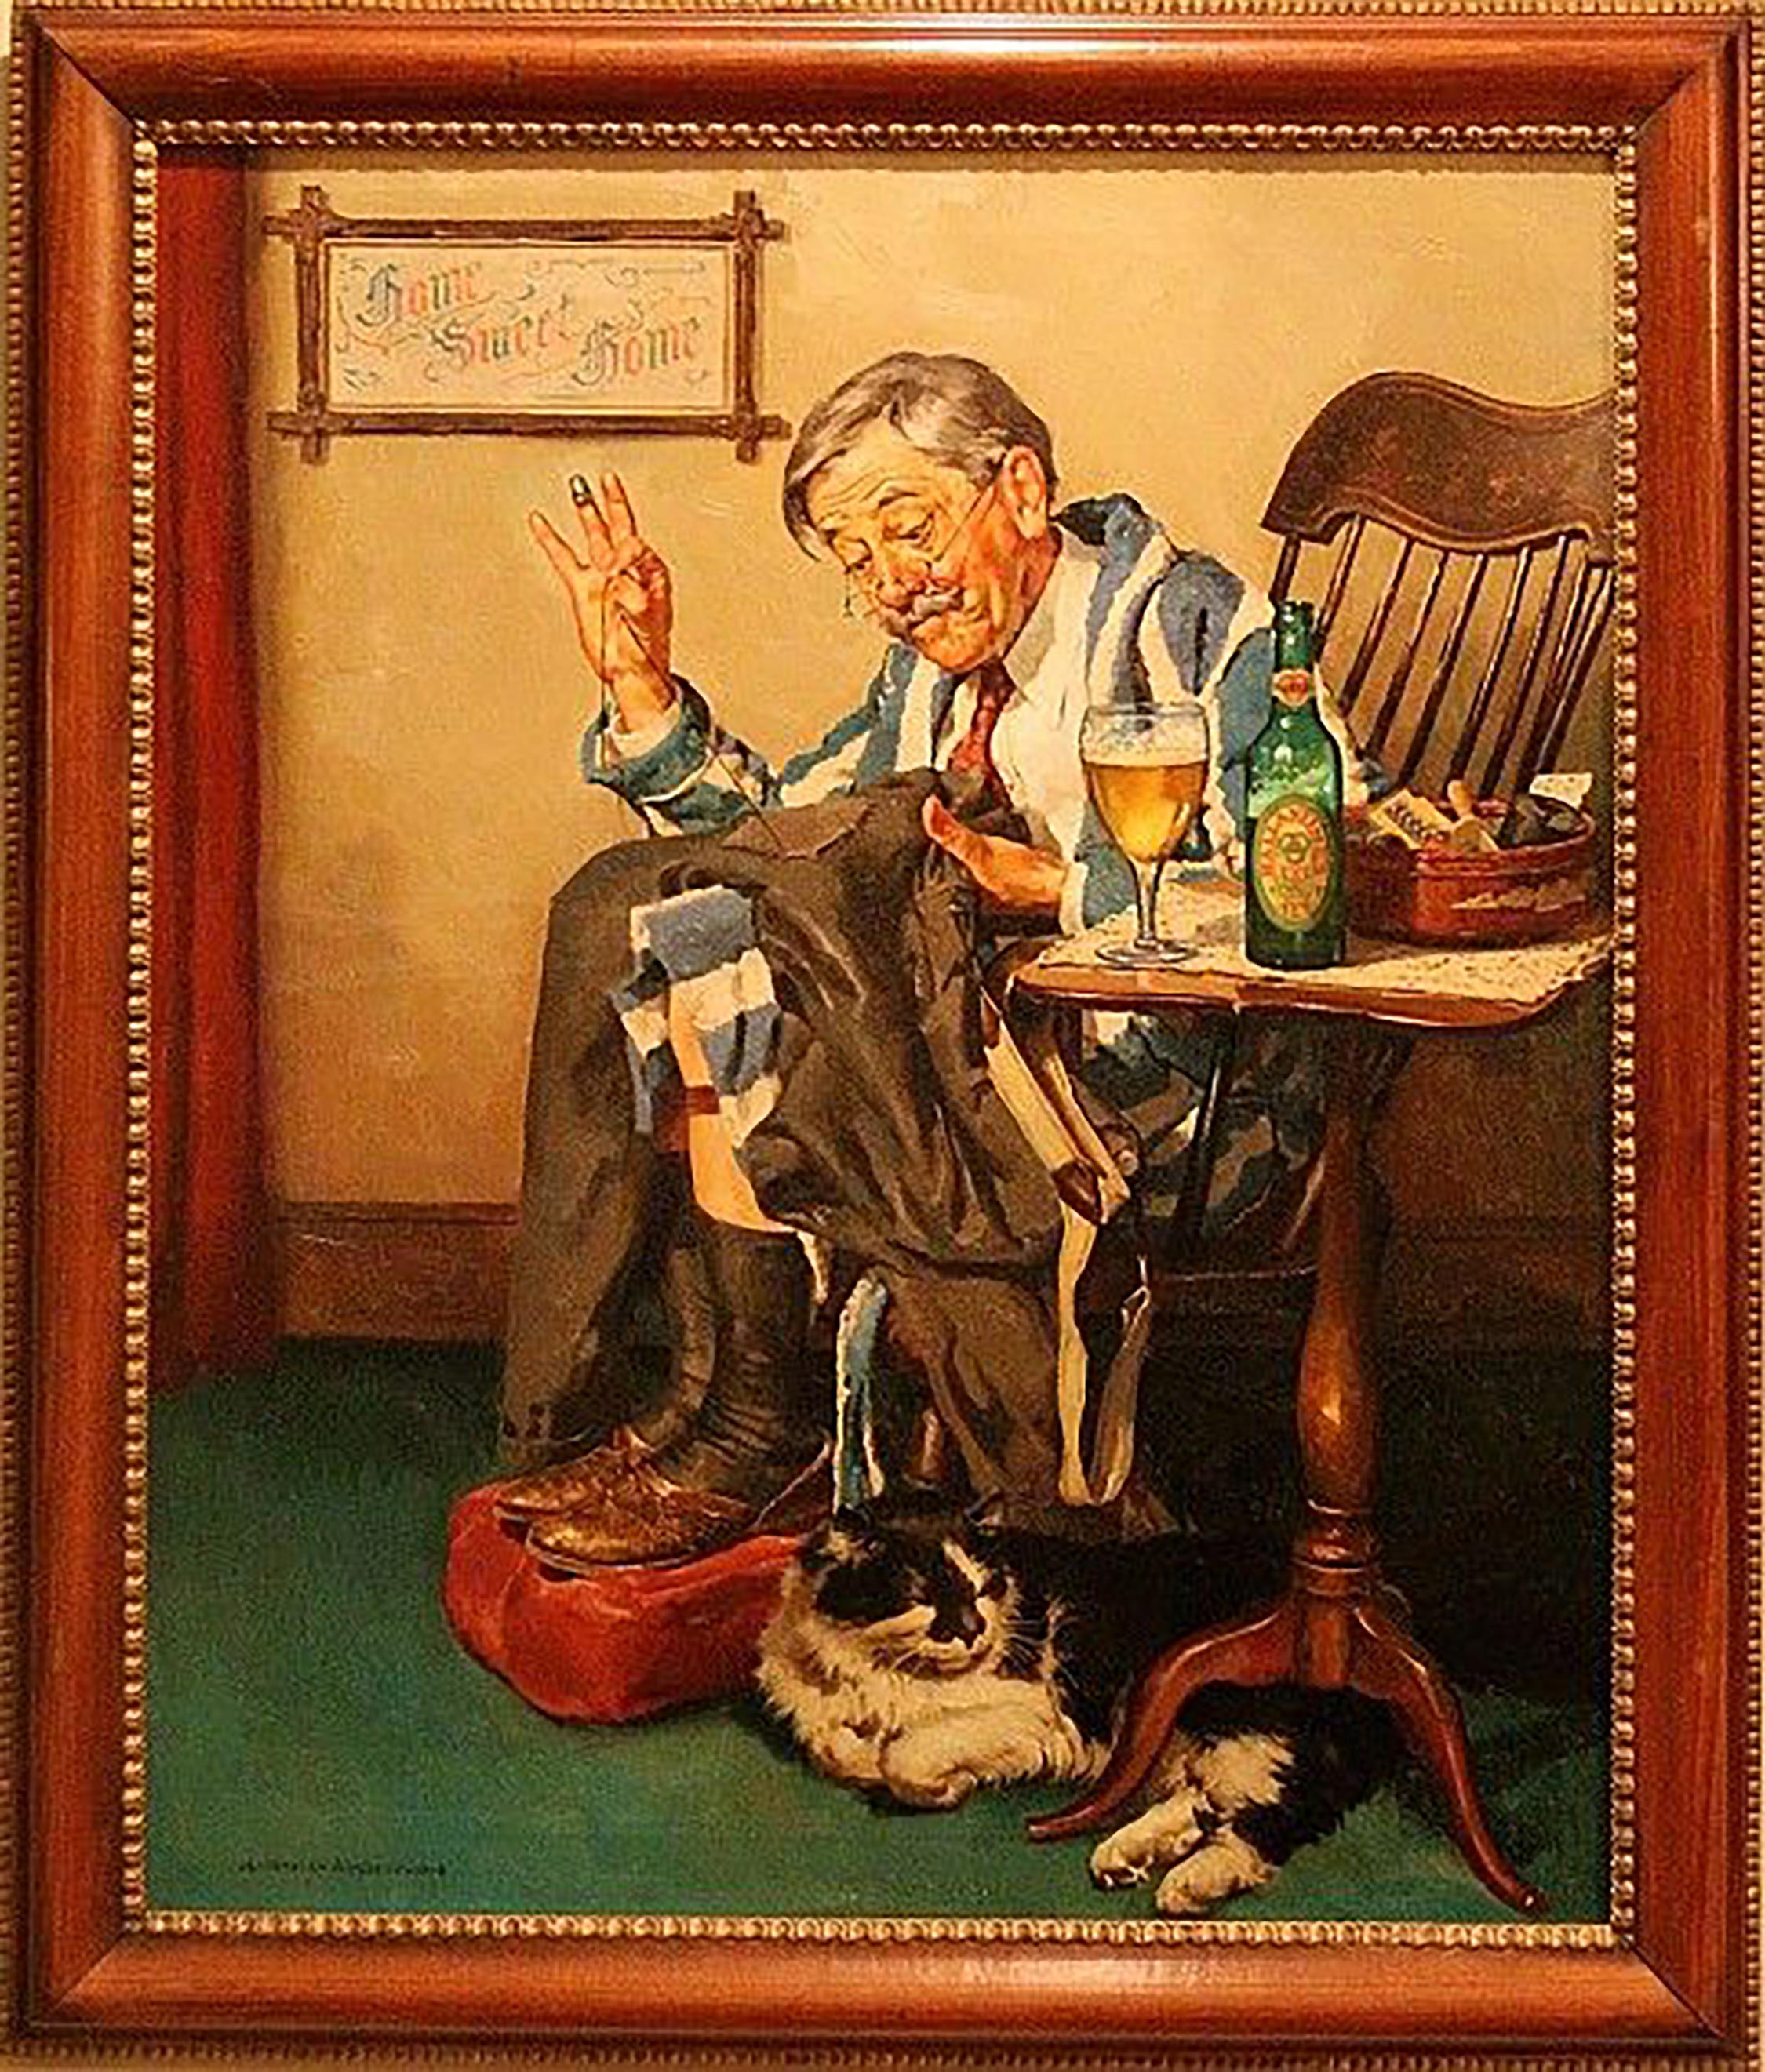 Ballentine Bier Werbung – Painting von Harold Anderson